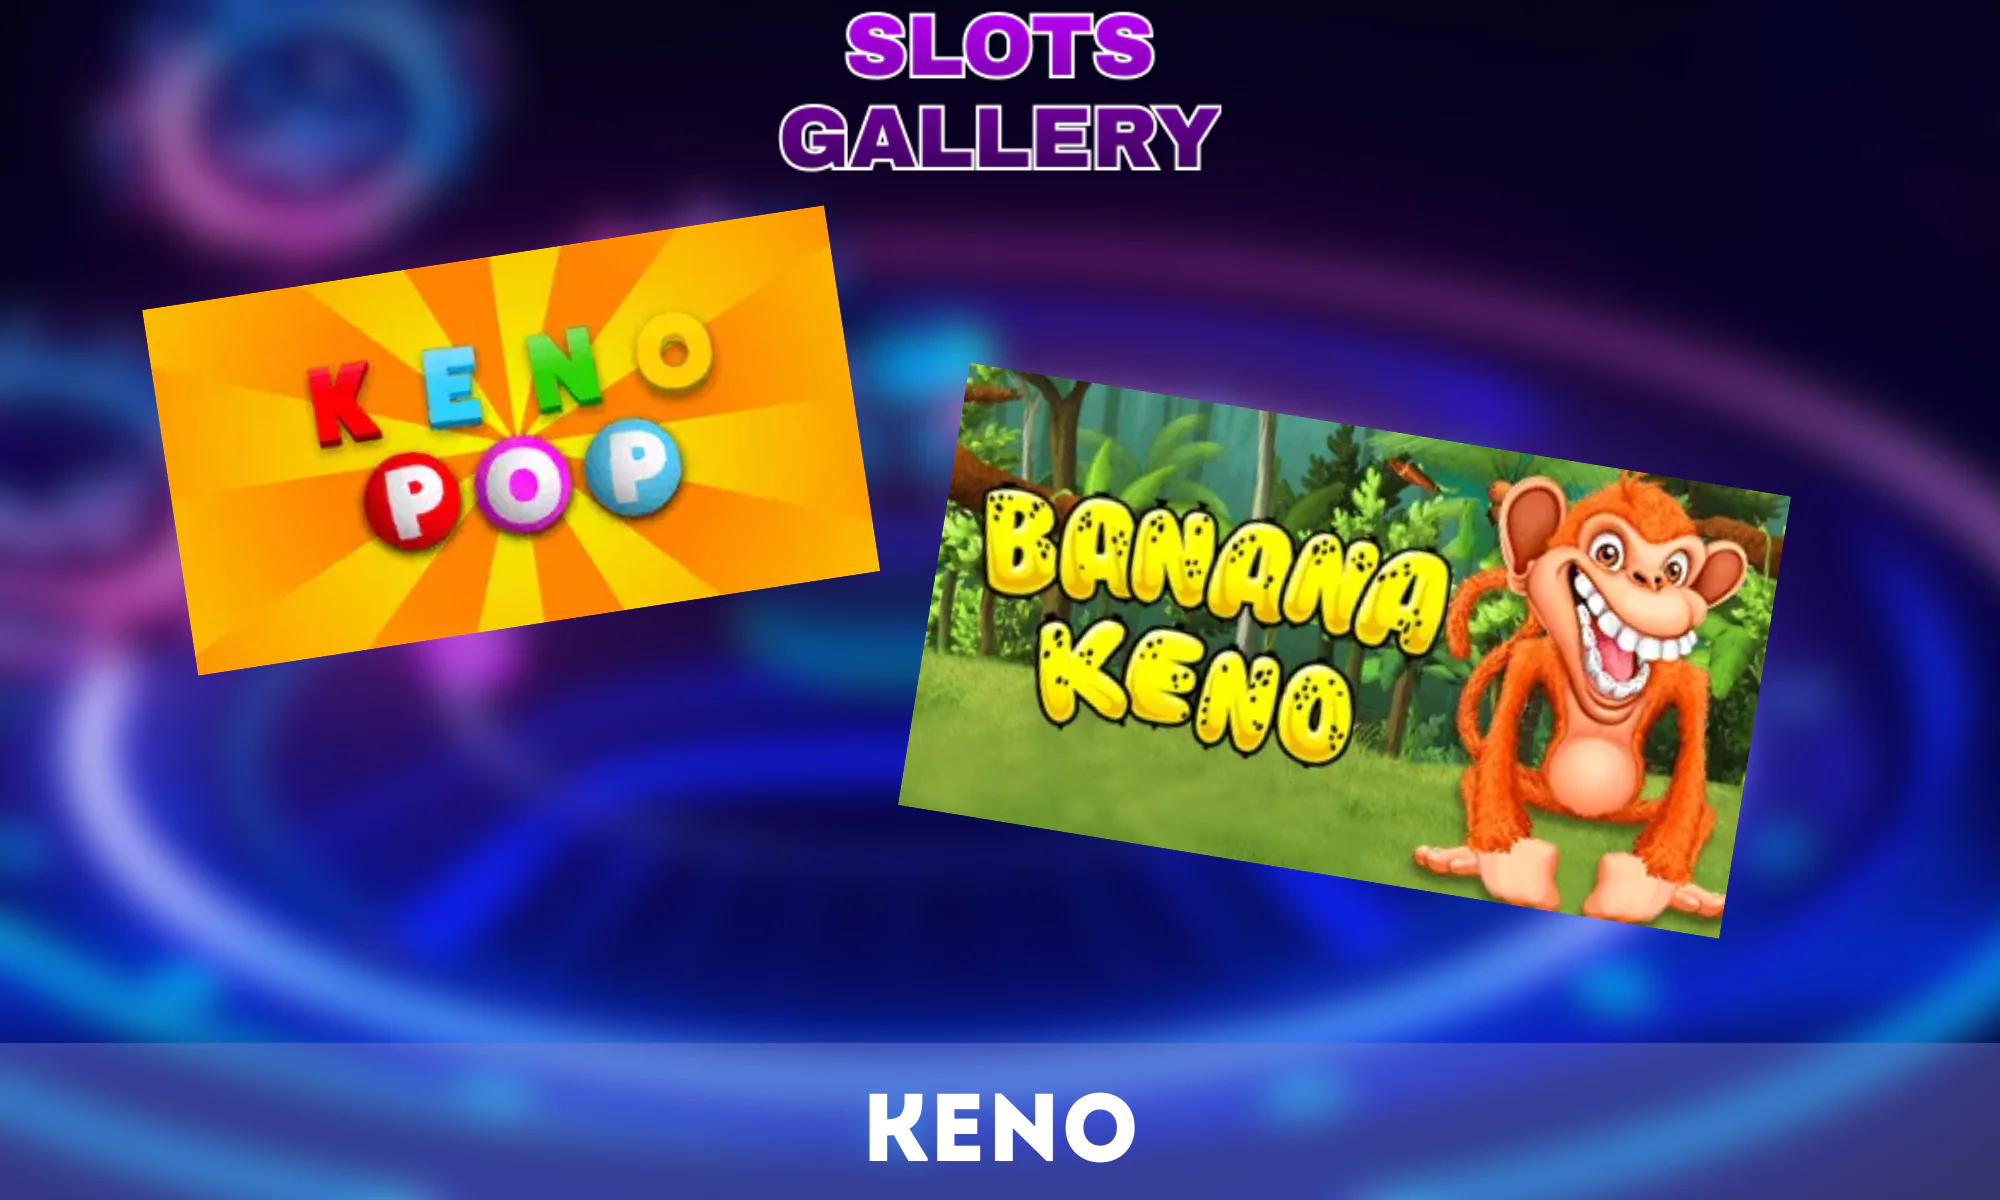 O Keno é um jogo de loteria clássico disponível na Slots Gallery